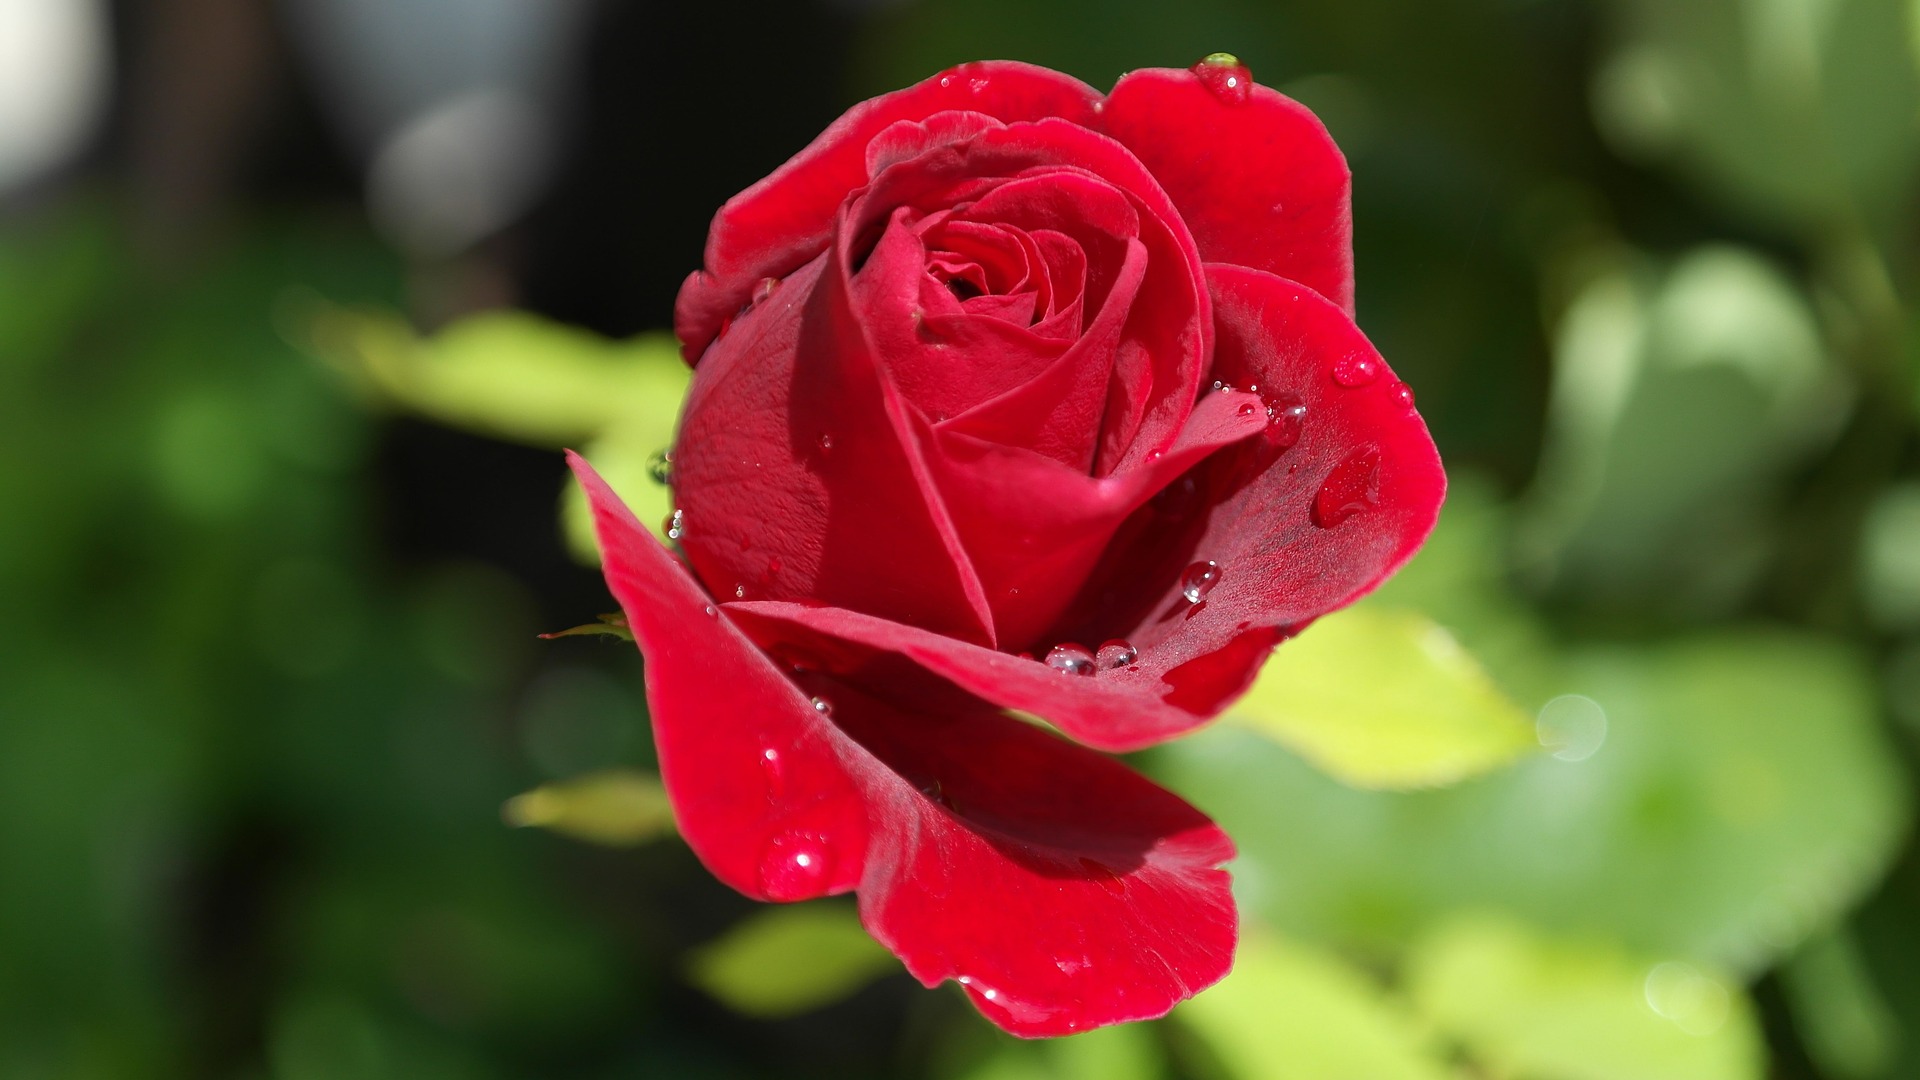 Rose, Bild von RitaE auf Pixabay